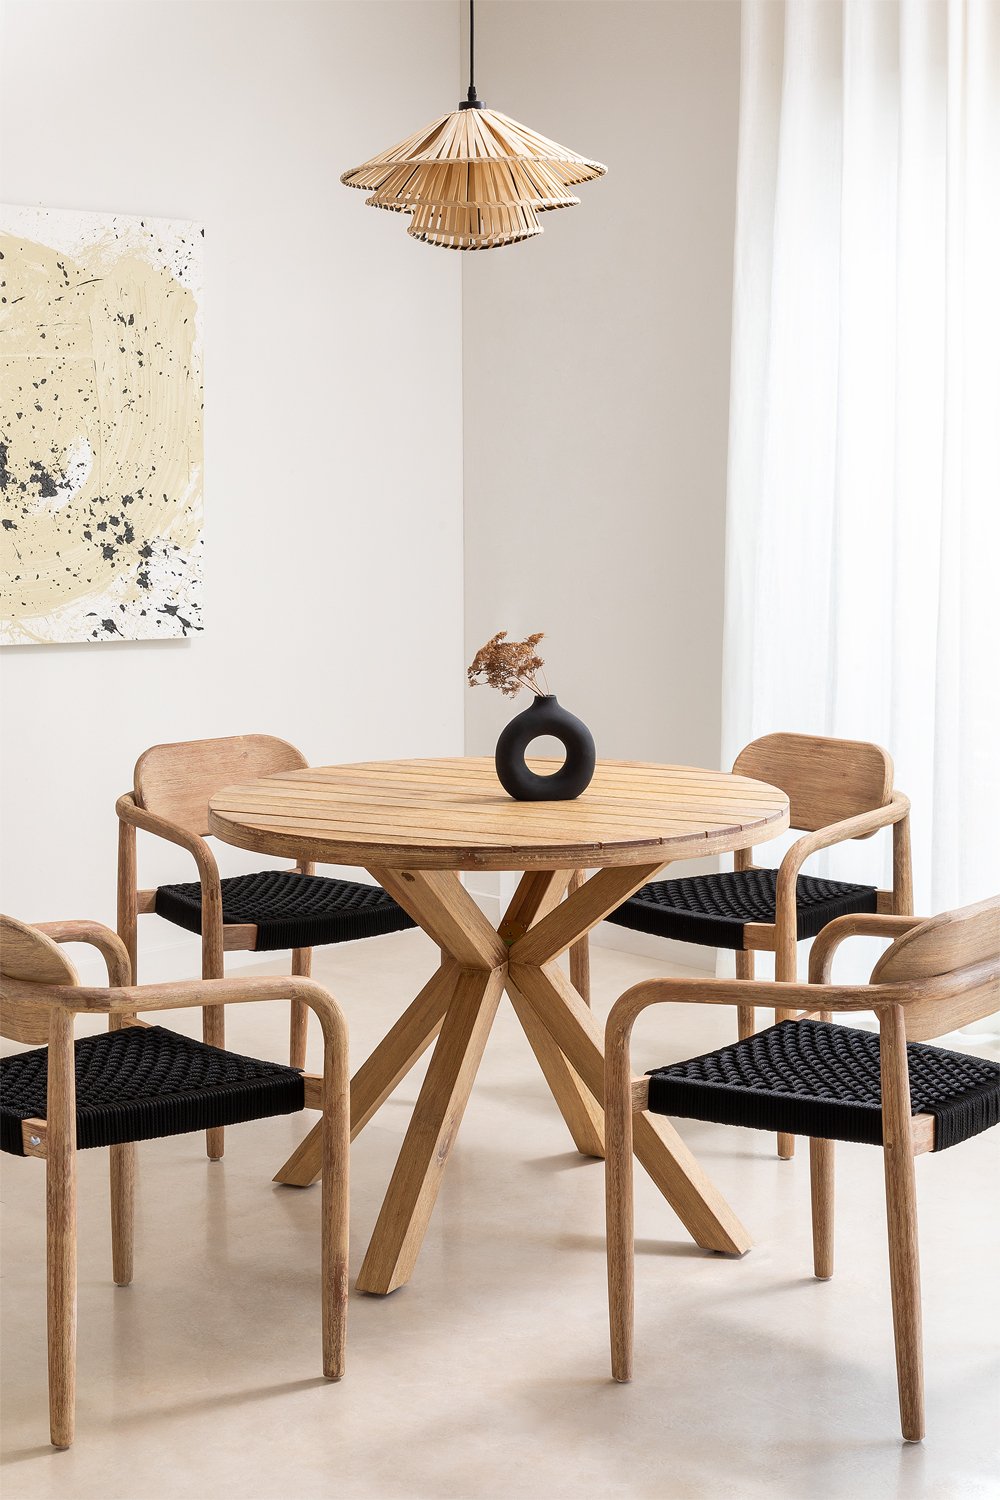 Ronde tafelset (Ø100 cm) en 4 eetkamerstoelen met armleuningen in hout Naele , galerij beeld 1